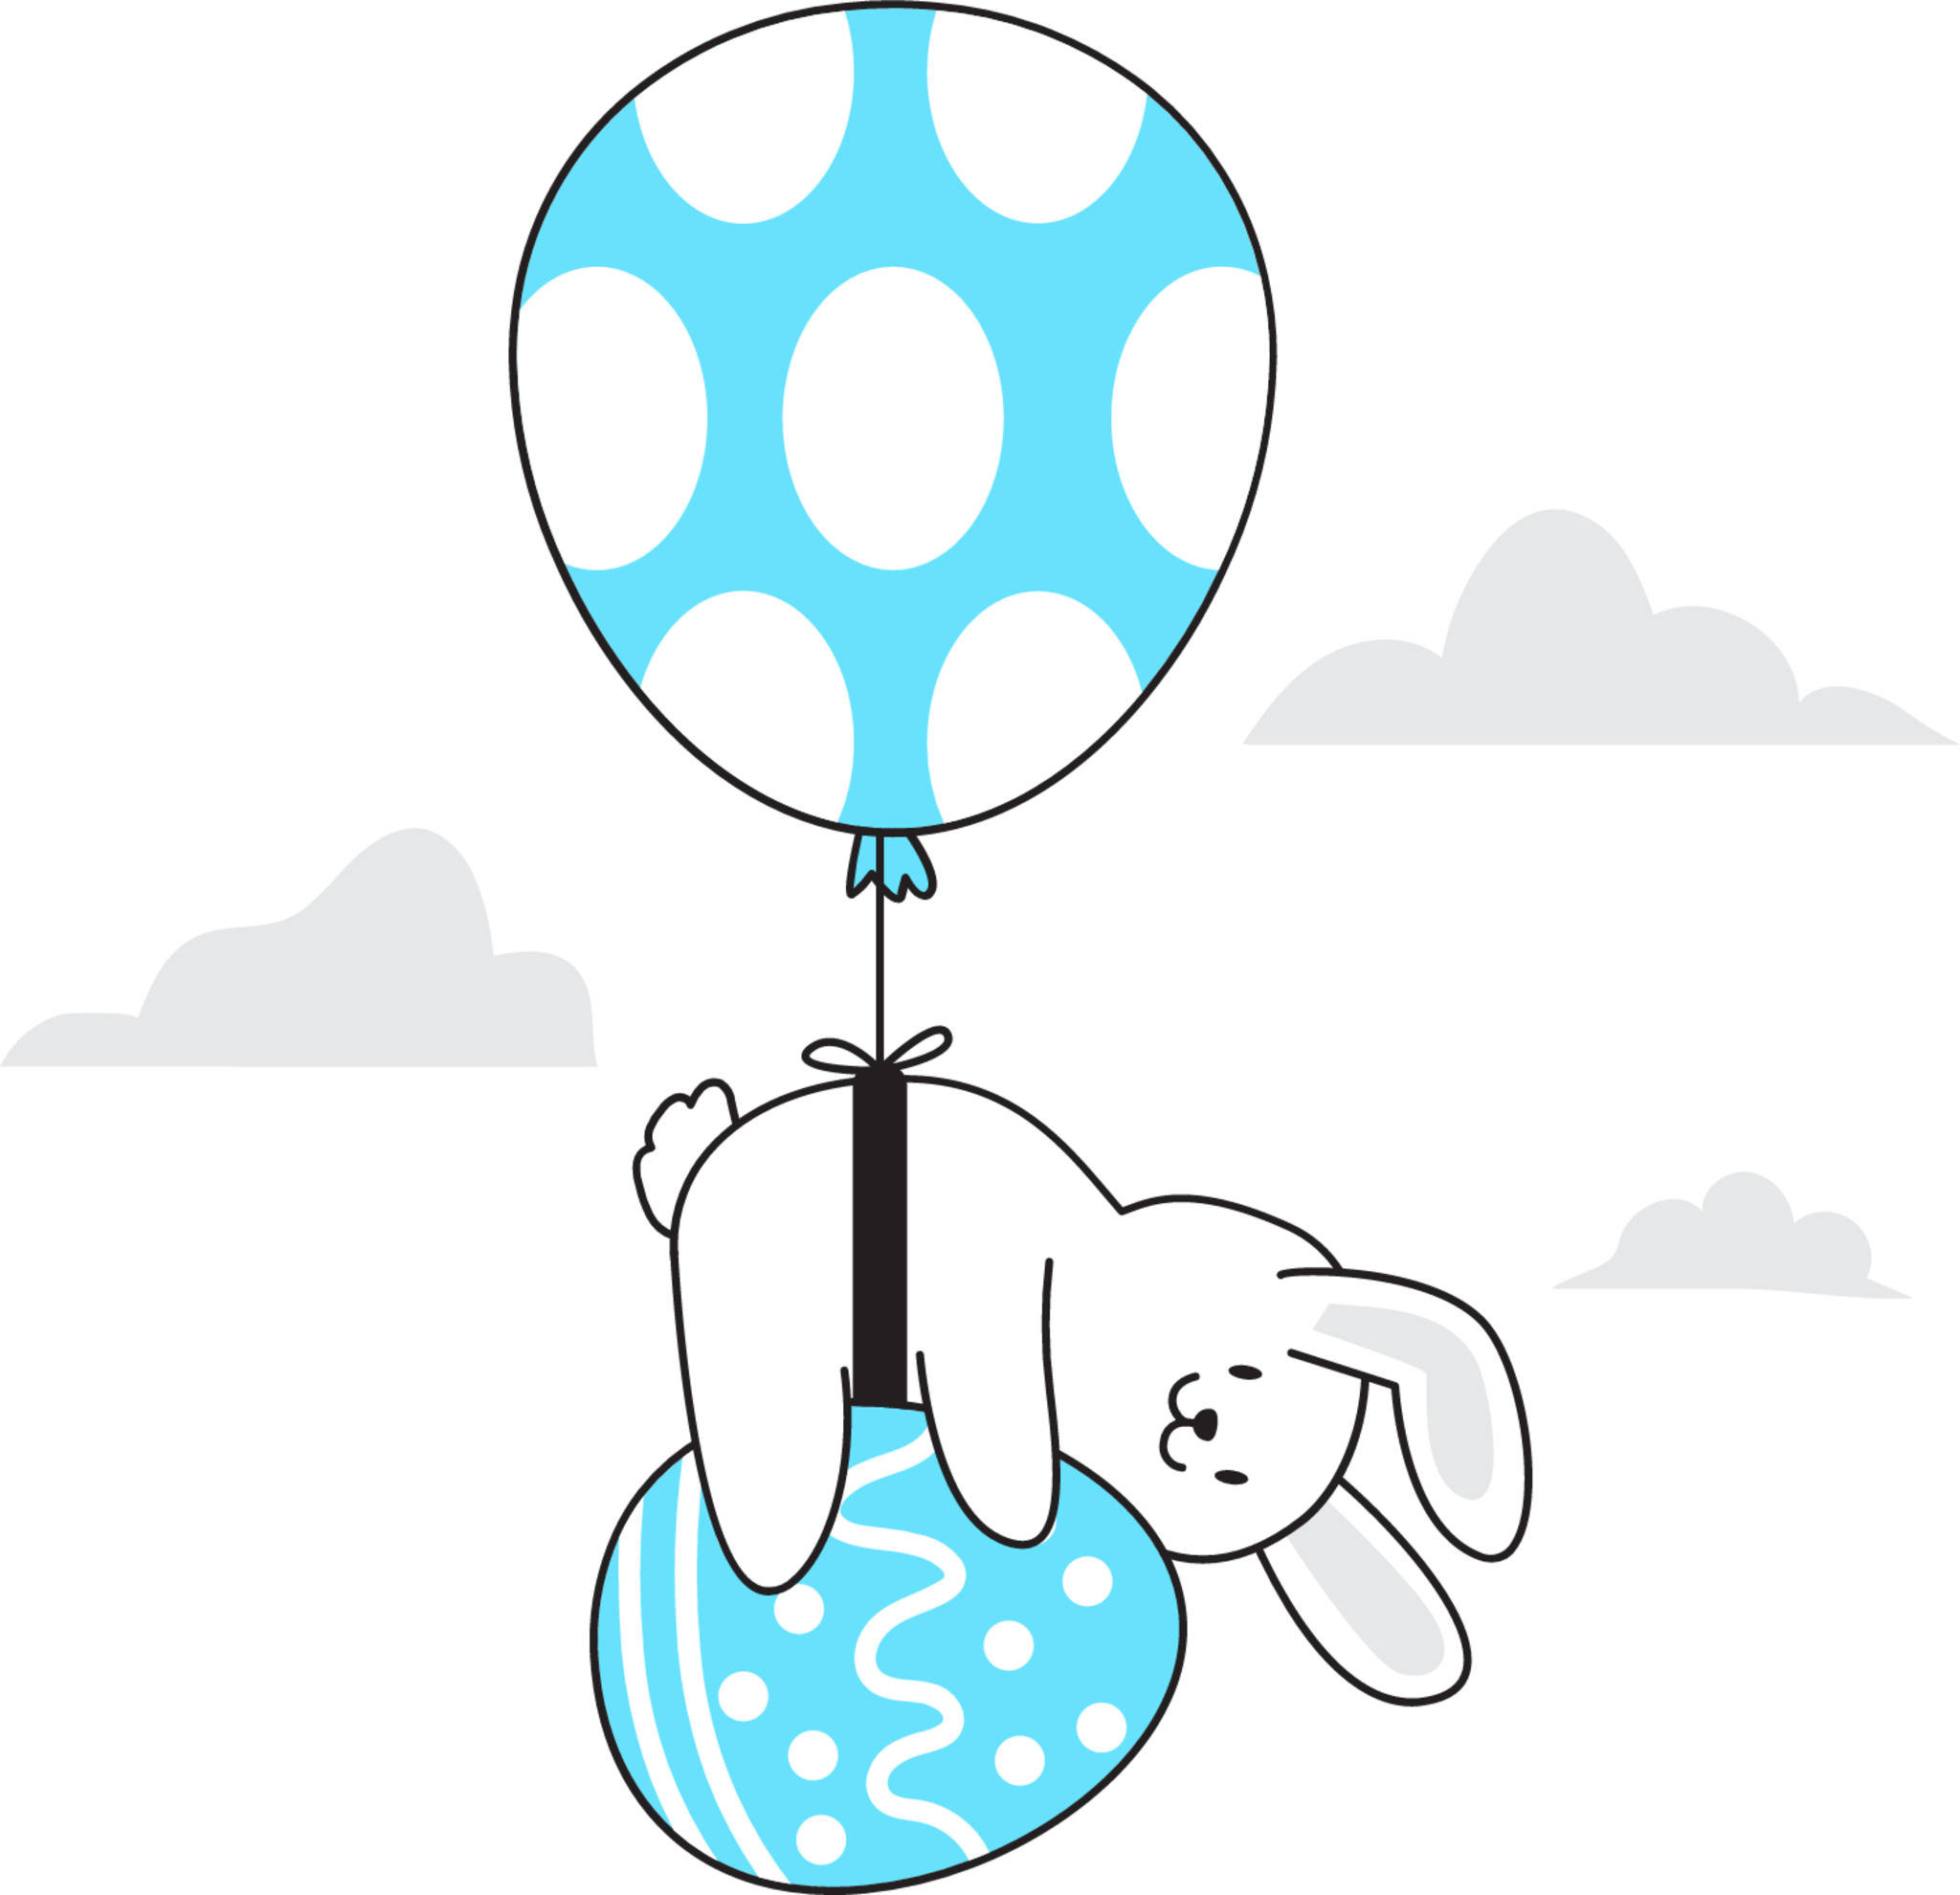 Easter balloon illustration